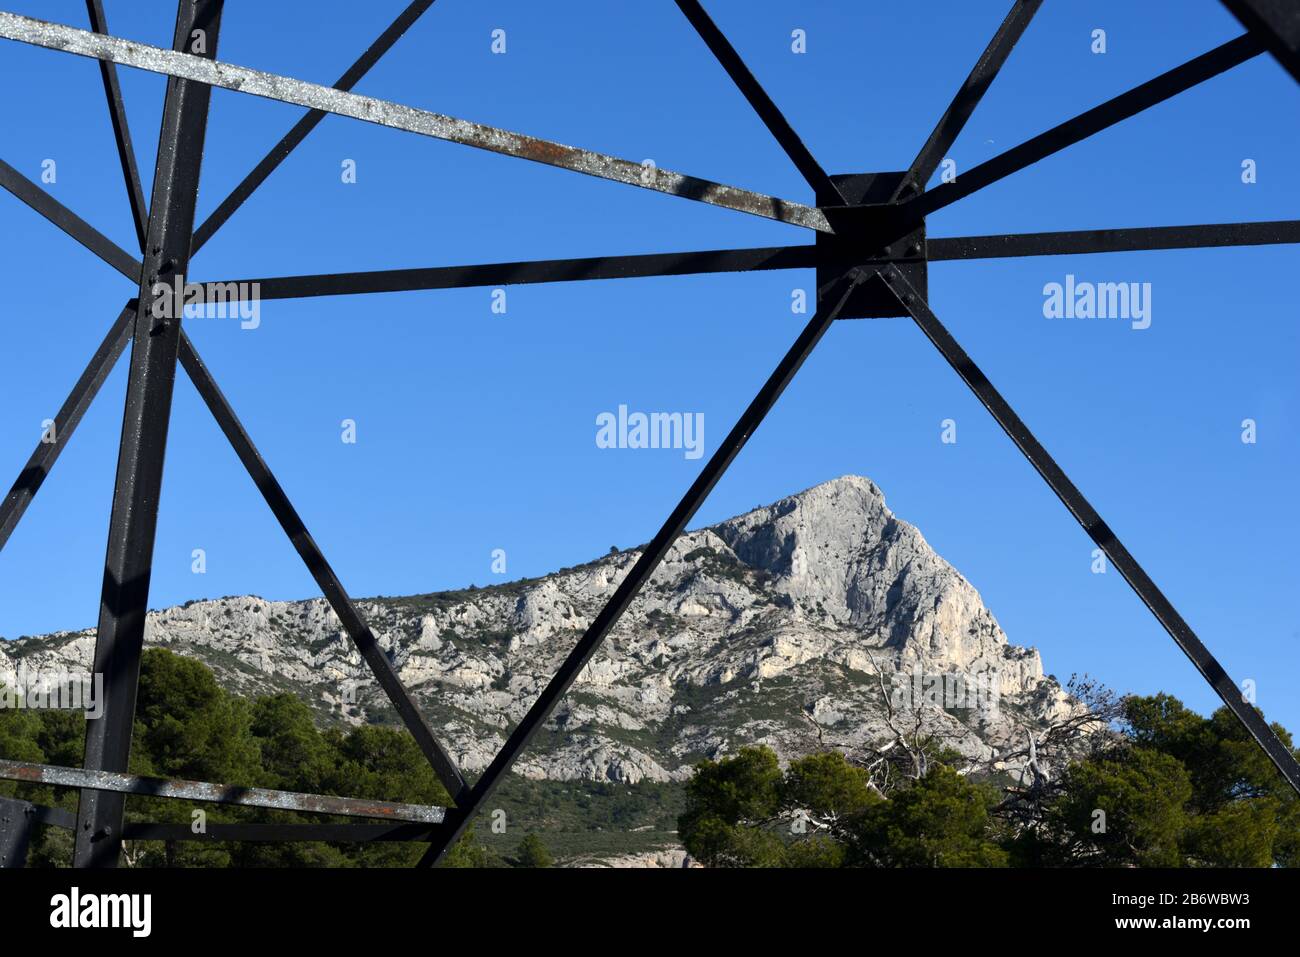 Mont Sainte-Victoire Montagne Encadrée Par Le Cadre En Acier De L'Électricité Pylon, De La Tour De Transmission Ou De La Tour De La Truss Près D'Aix-En-Provence Provence France Banque D'Images